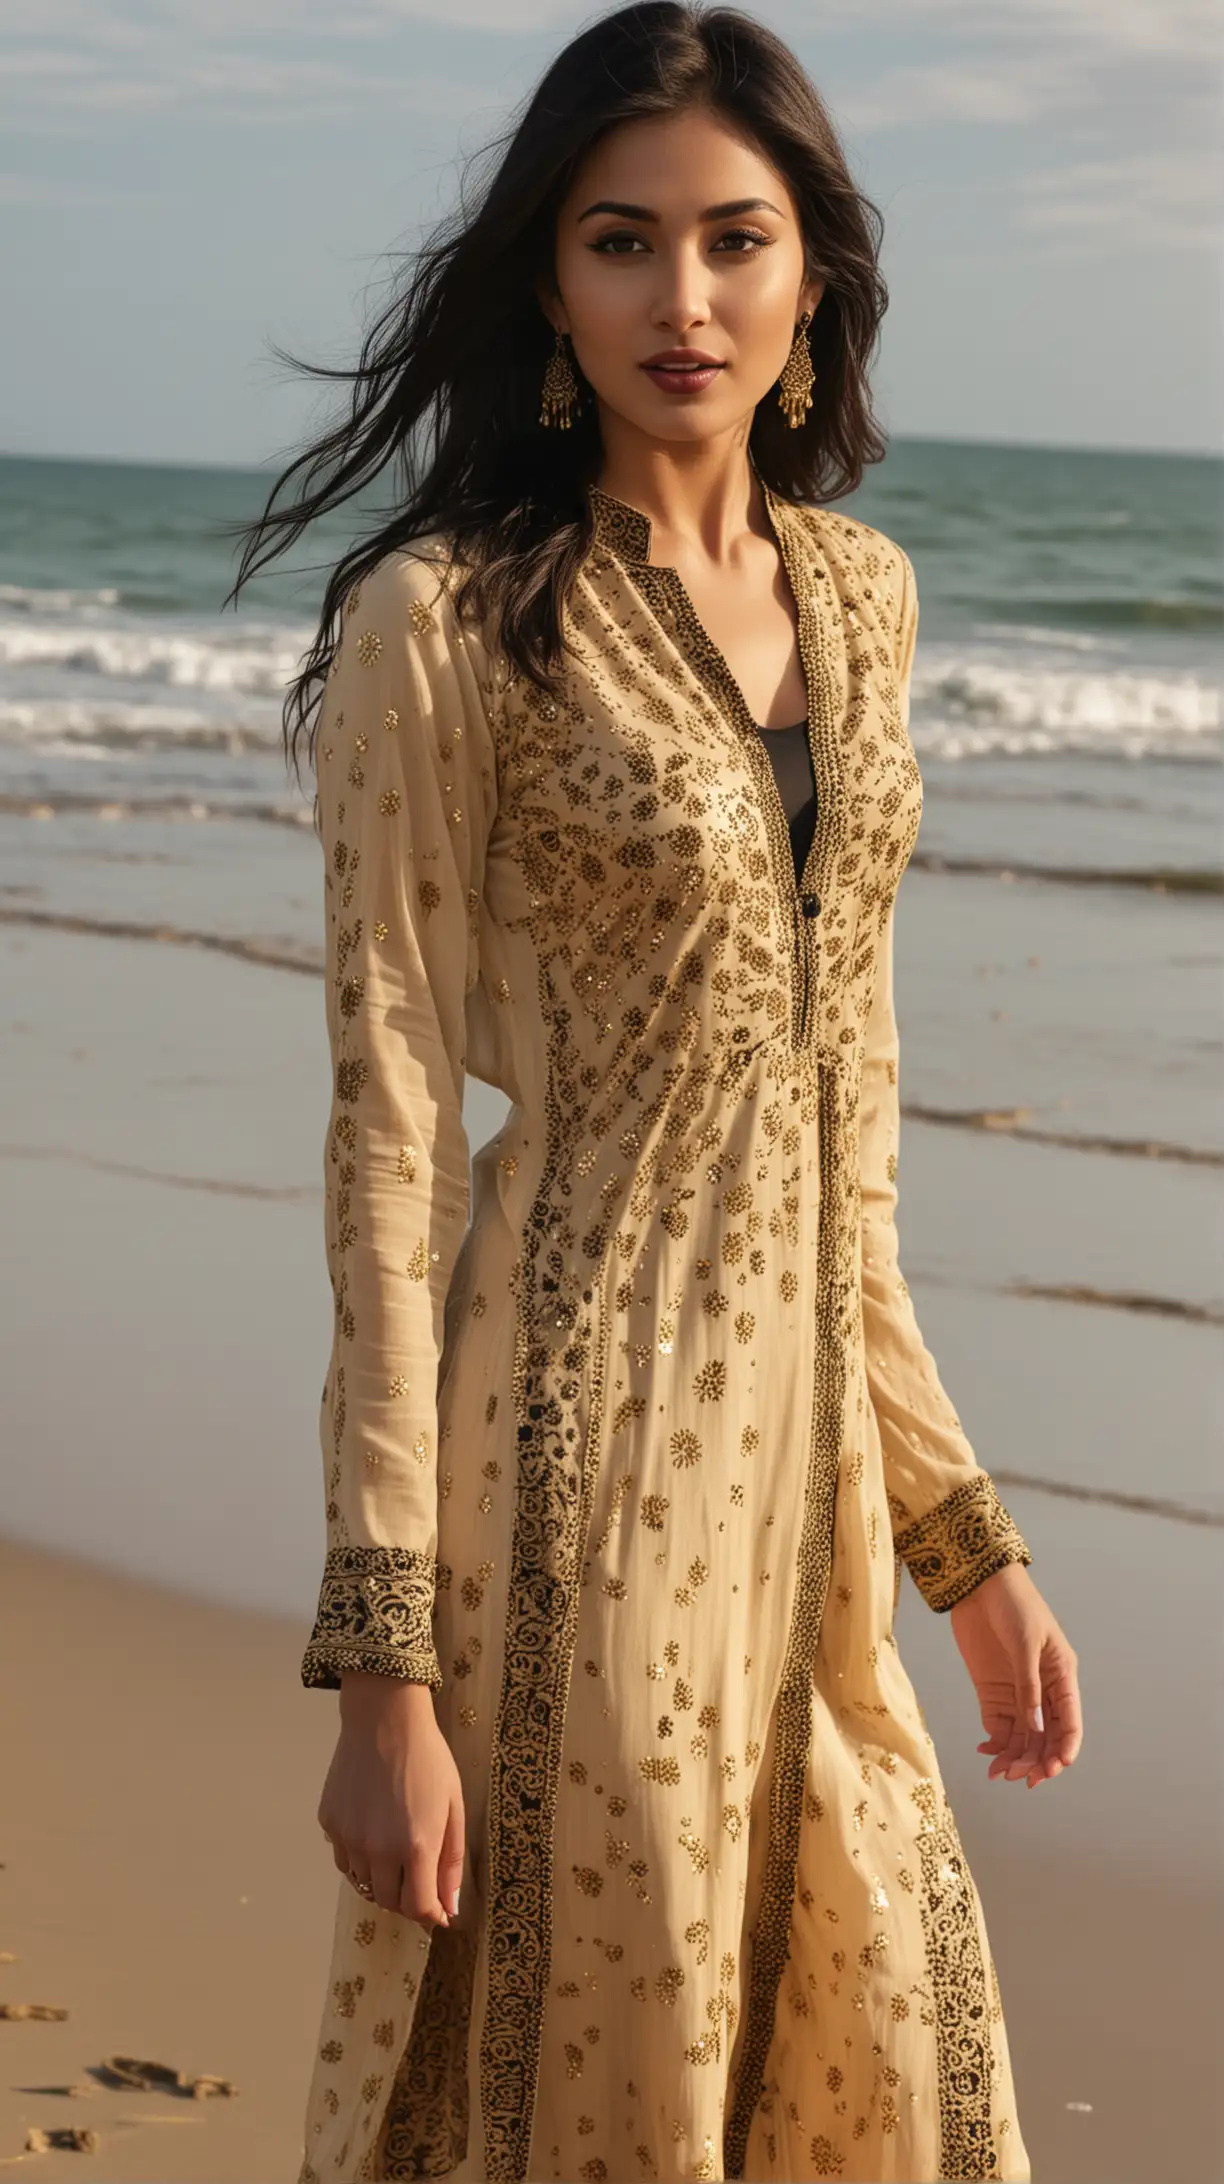 Elegant British Woman in Beige and Gold Indian Salwaar Kameez Dancing by the Beach